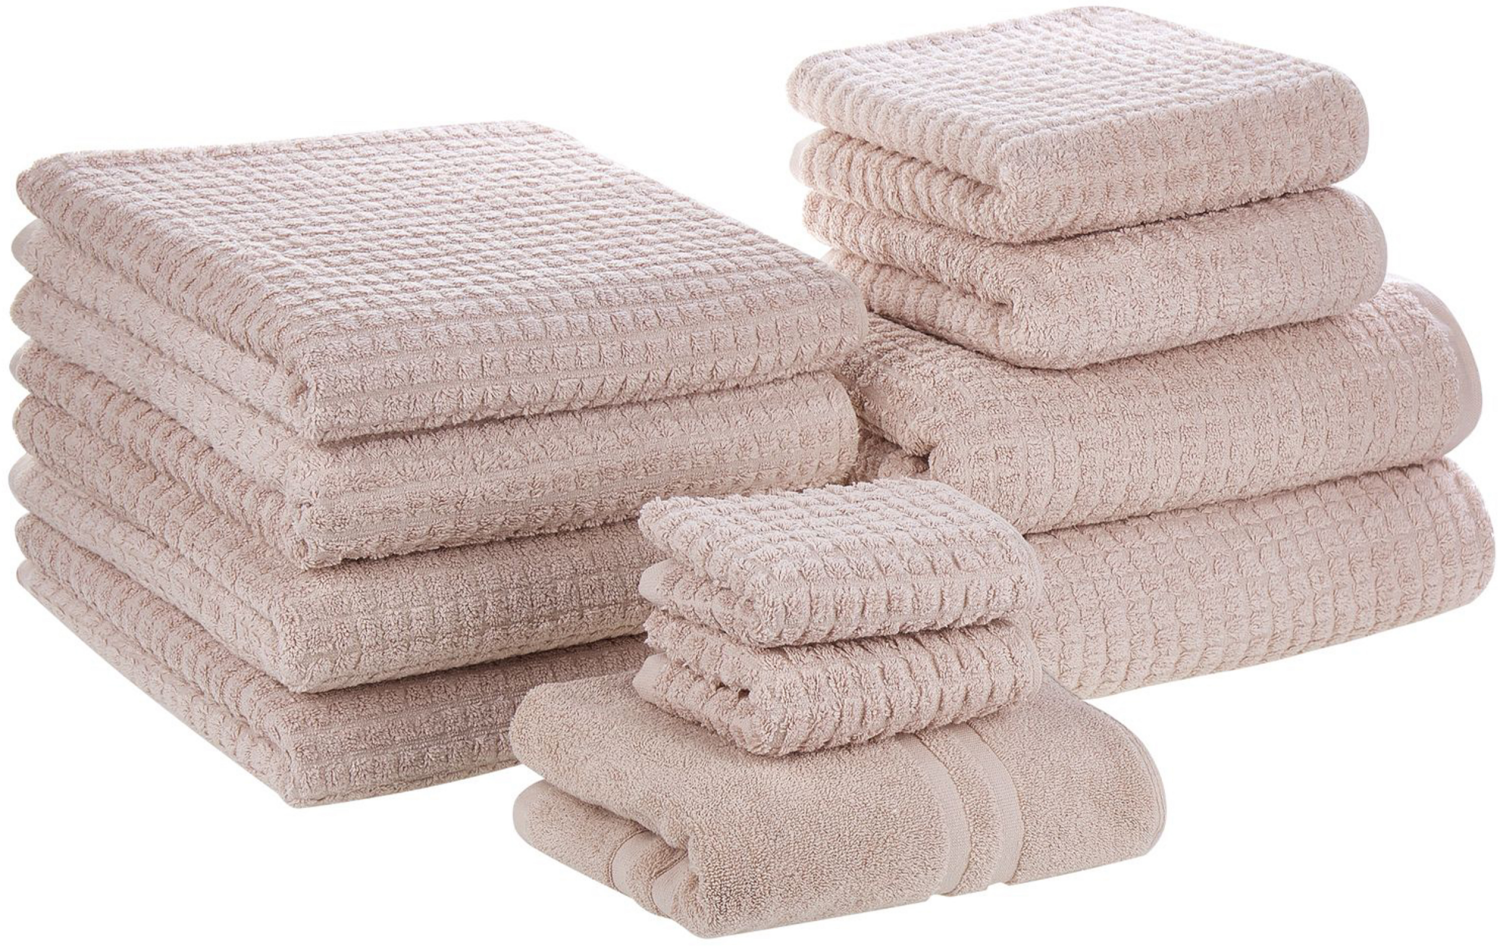 Badehandtuch Set mit Badematte 11-teilig Rosa Baumwolle Frottee Handtücher in verschiedenen Größen Bild 1